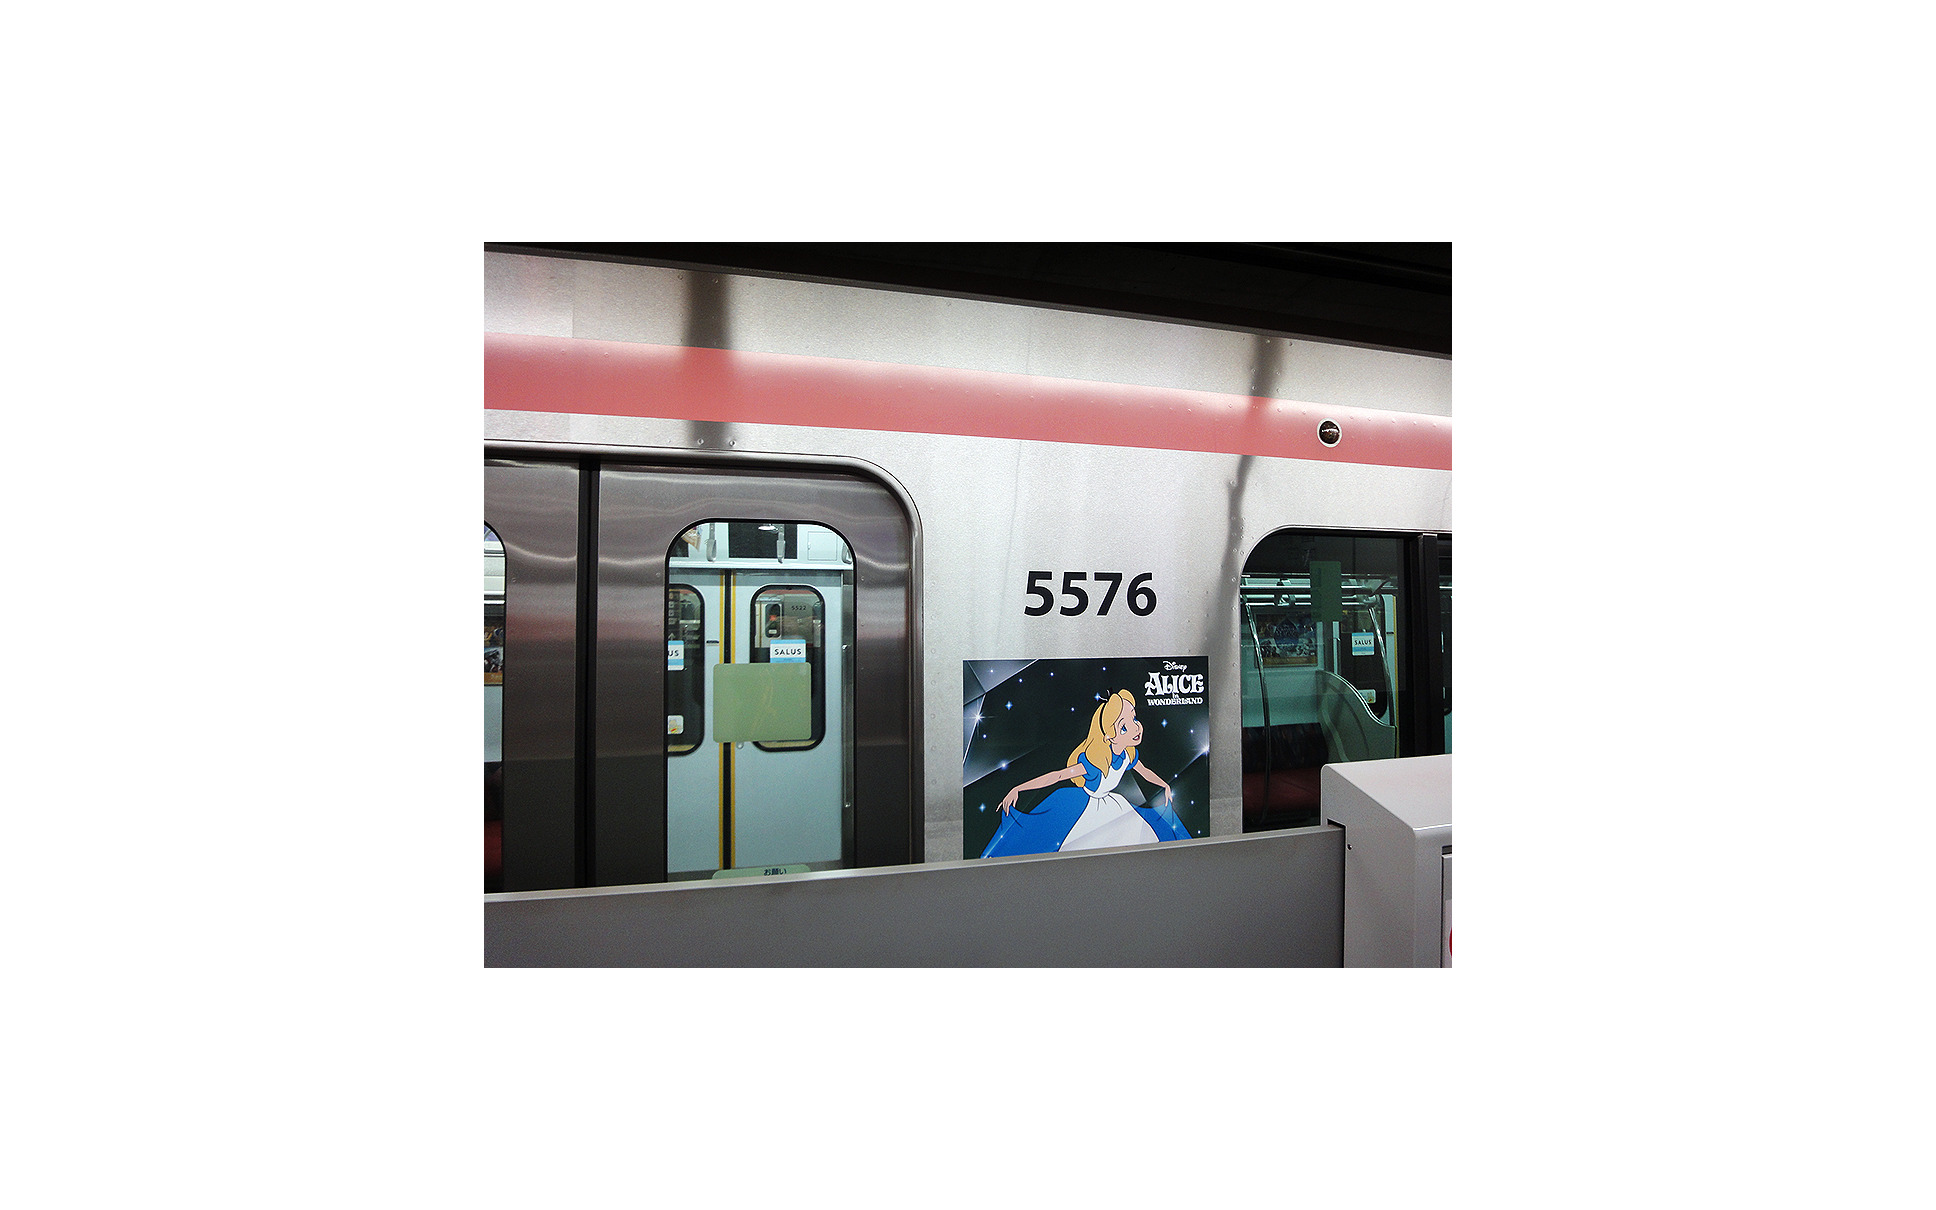 東急ディズニー電車出発 東横線ラッピング車両はサスティナ車5176編成 1枚目の写真 画像 レスポンス Response Jp